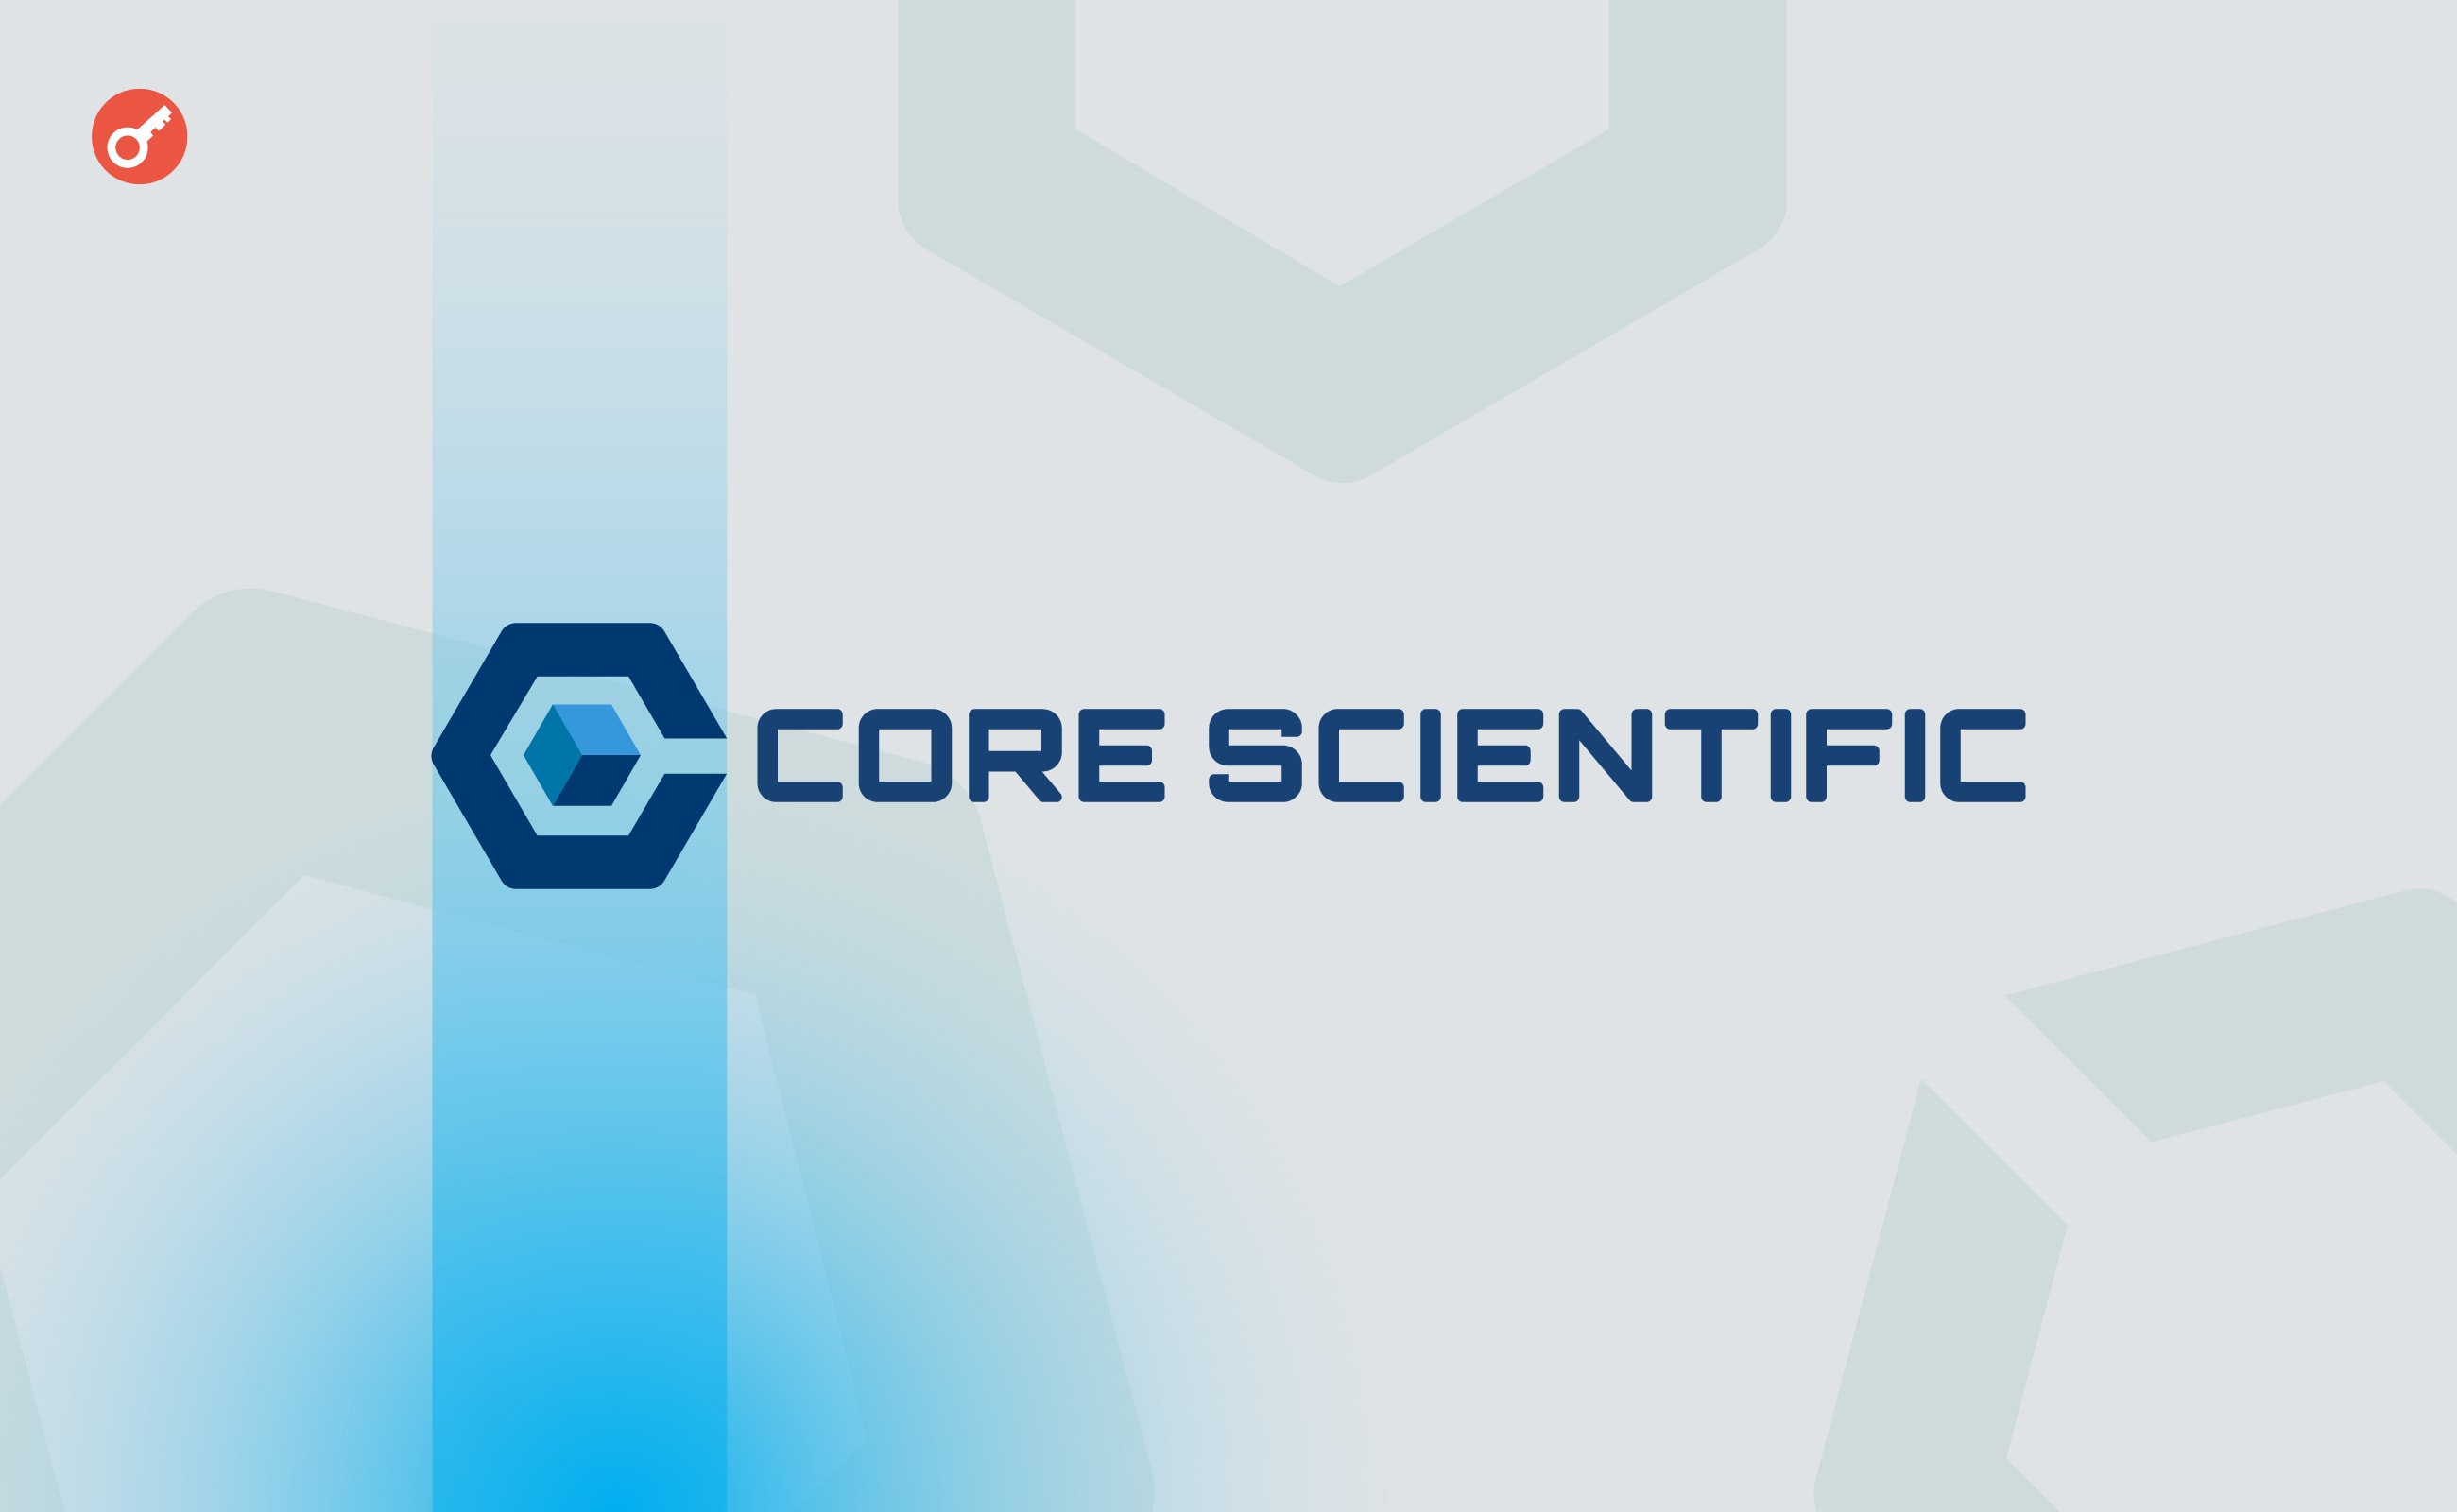 Компанія Core Scientific готова вийти з банкрутства. Головний колаж новини.